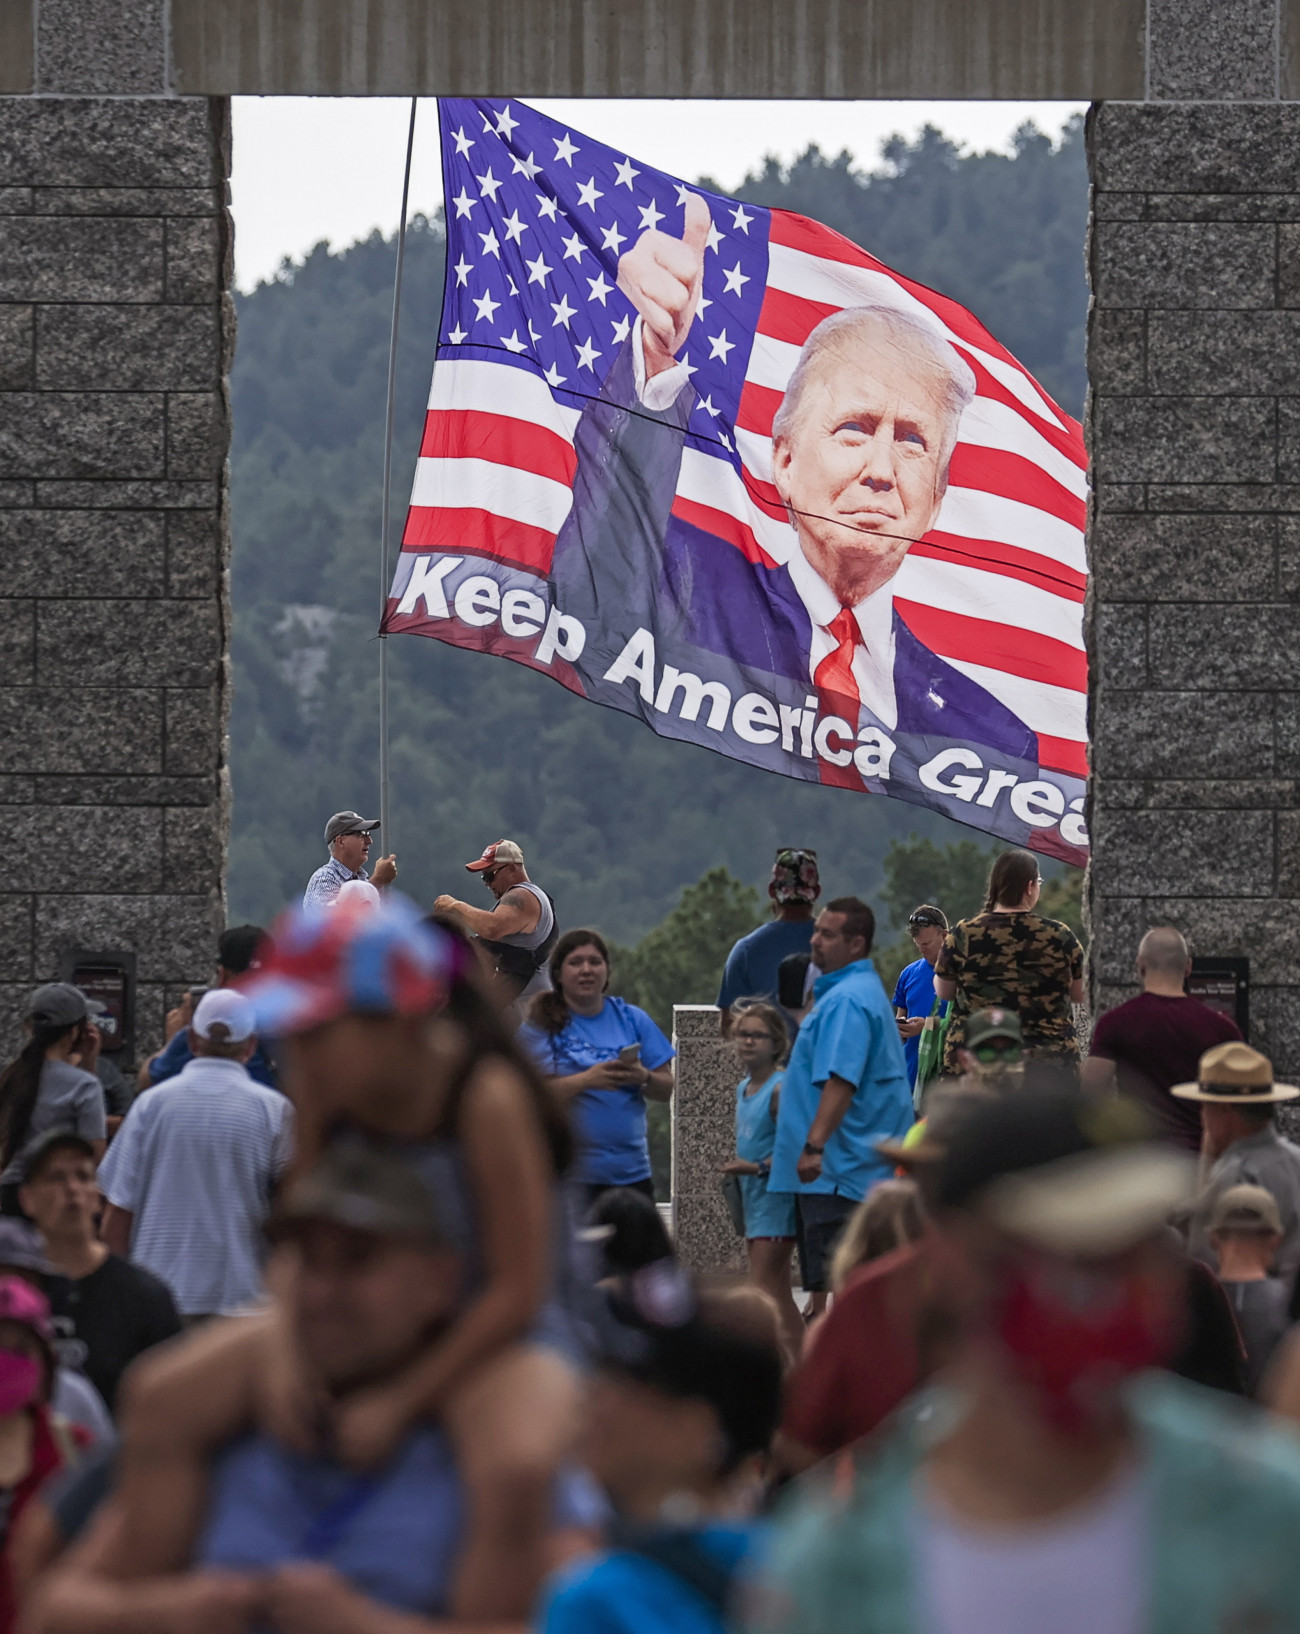 Keystone, 2020. július 3.
Donald Trump amerikai elnök támogatói érkeznek a Rushmore-hegyi emlékműhöz a dél-dakotai Keystone-ban 2020. július 2-án. Trump itt tartja a függetlenség napi ünnepi beszédét július 3-án, egy nappal a hivatalos ünnep előtt.
MTI/EPA/Tannen Maury